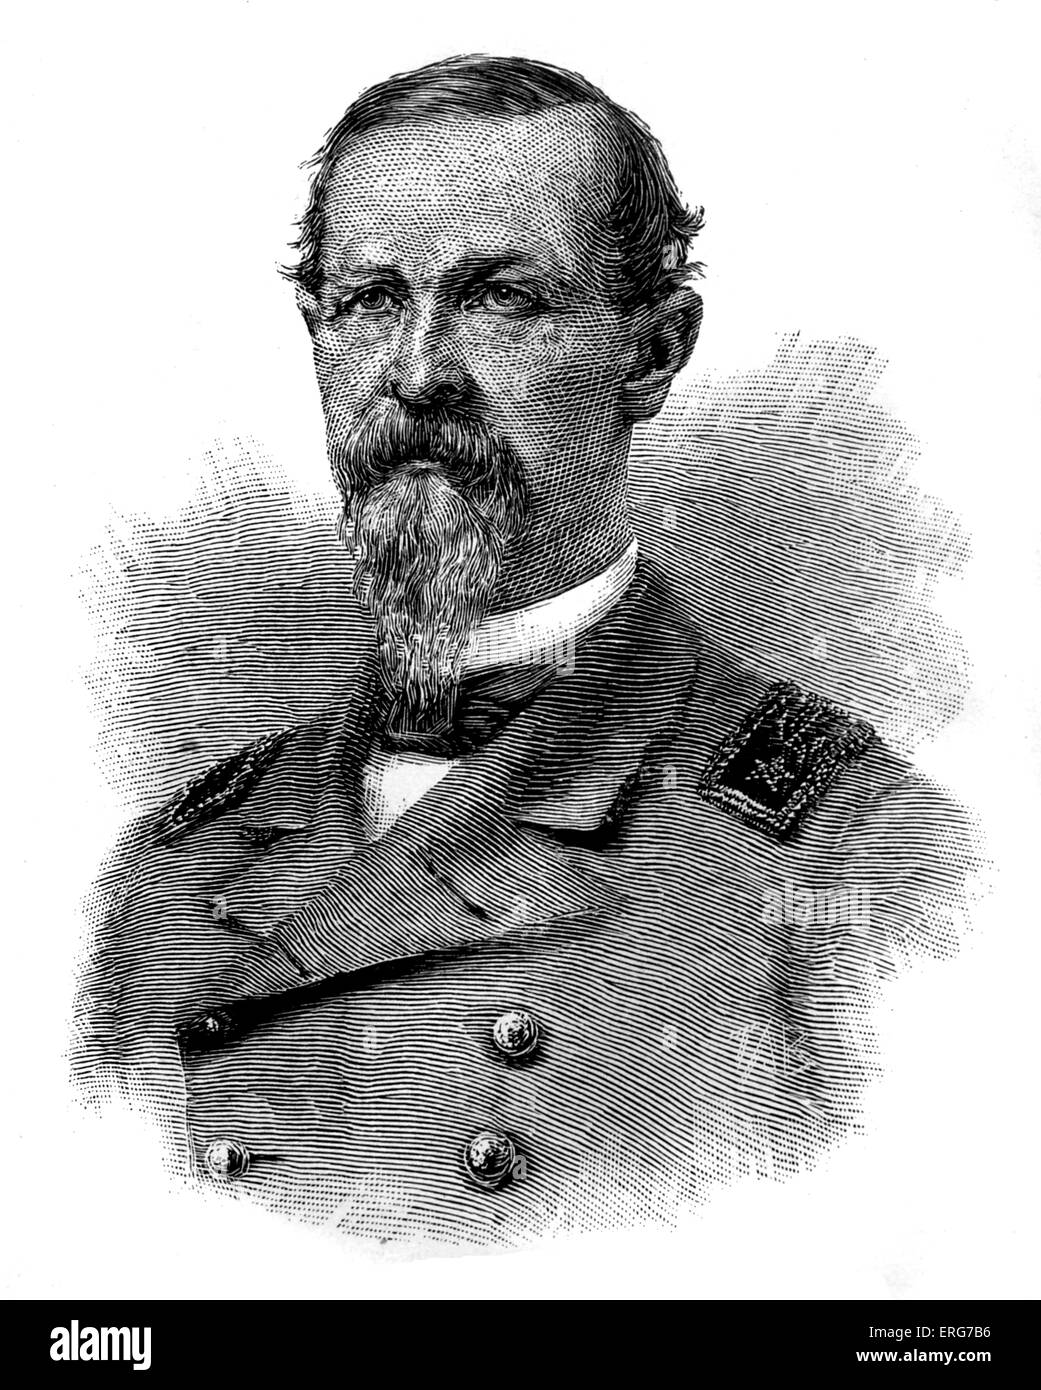 Commander James D Johnston, Konföderierten Marine Kommandant verantwortlich für die CSS Tennessee, als es während der Schlacht von Mobile Bay am 5. August 1864.American Bürgerkrieg gefangen genommen wurde Stockfoto